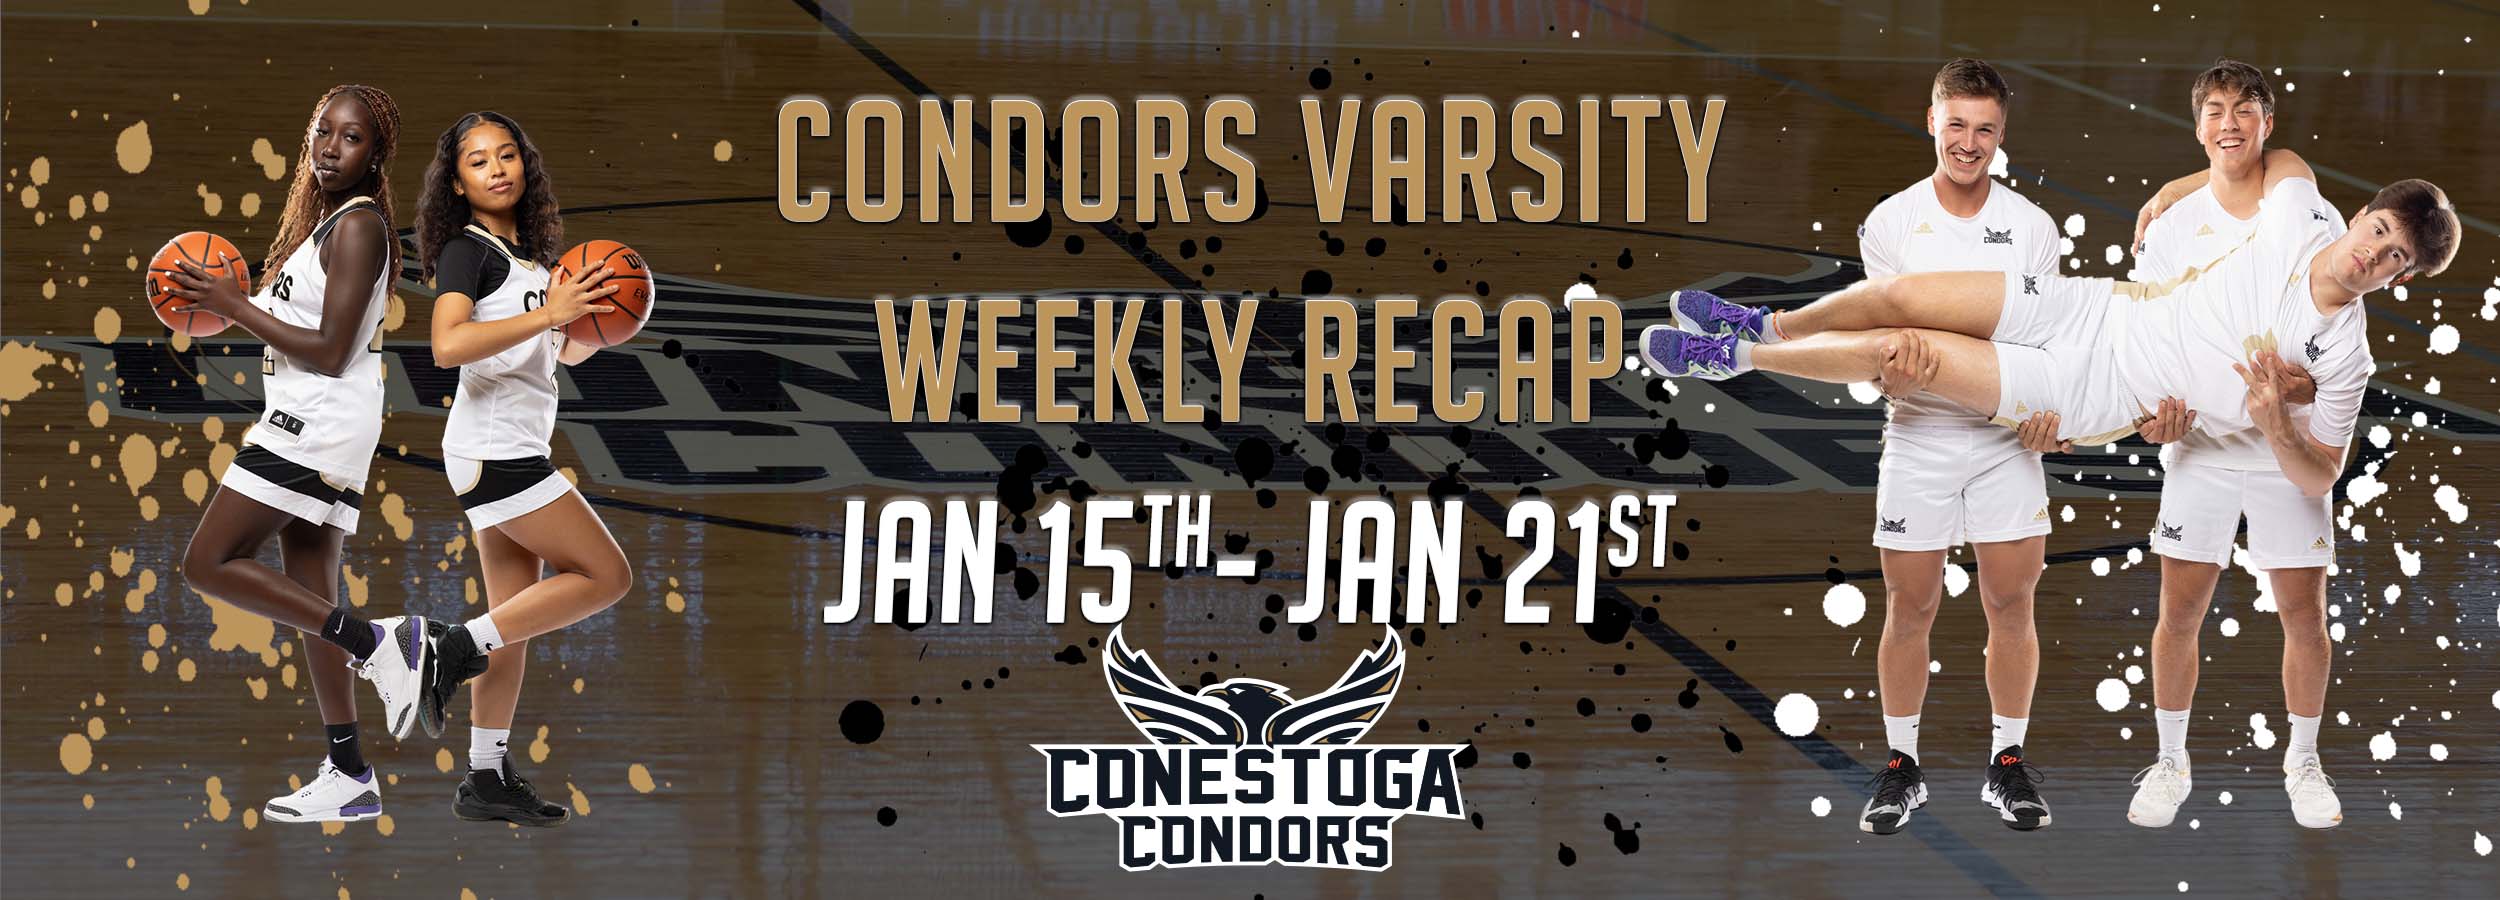 Condors Varsity Weekly Recap Jan 15th - 21st